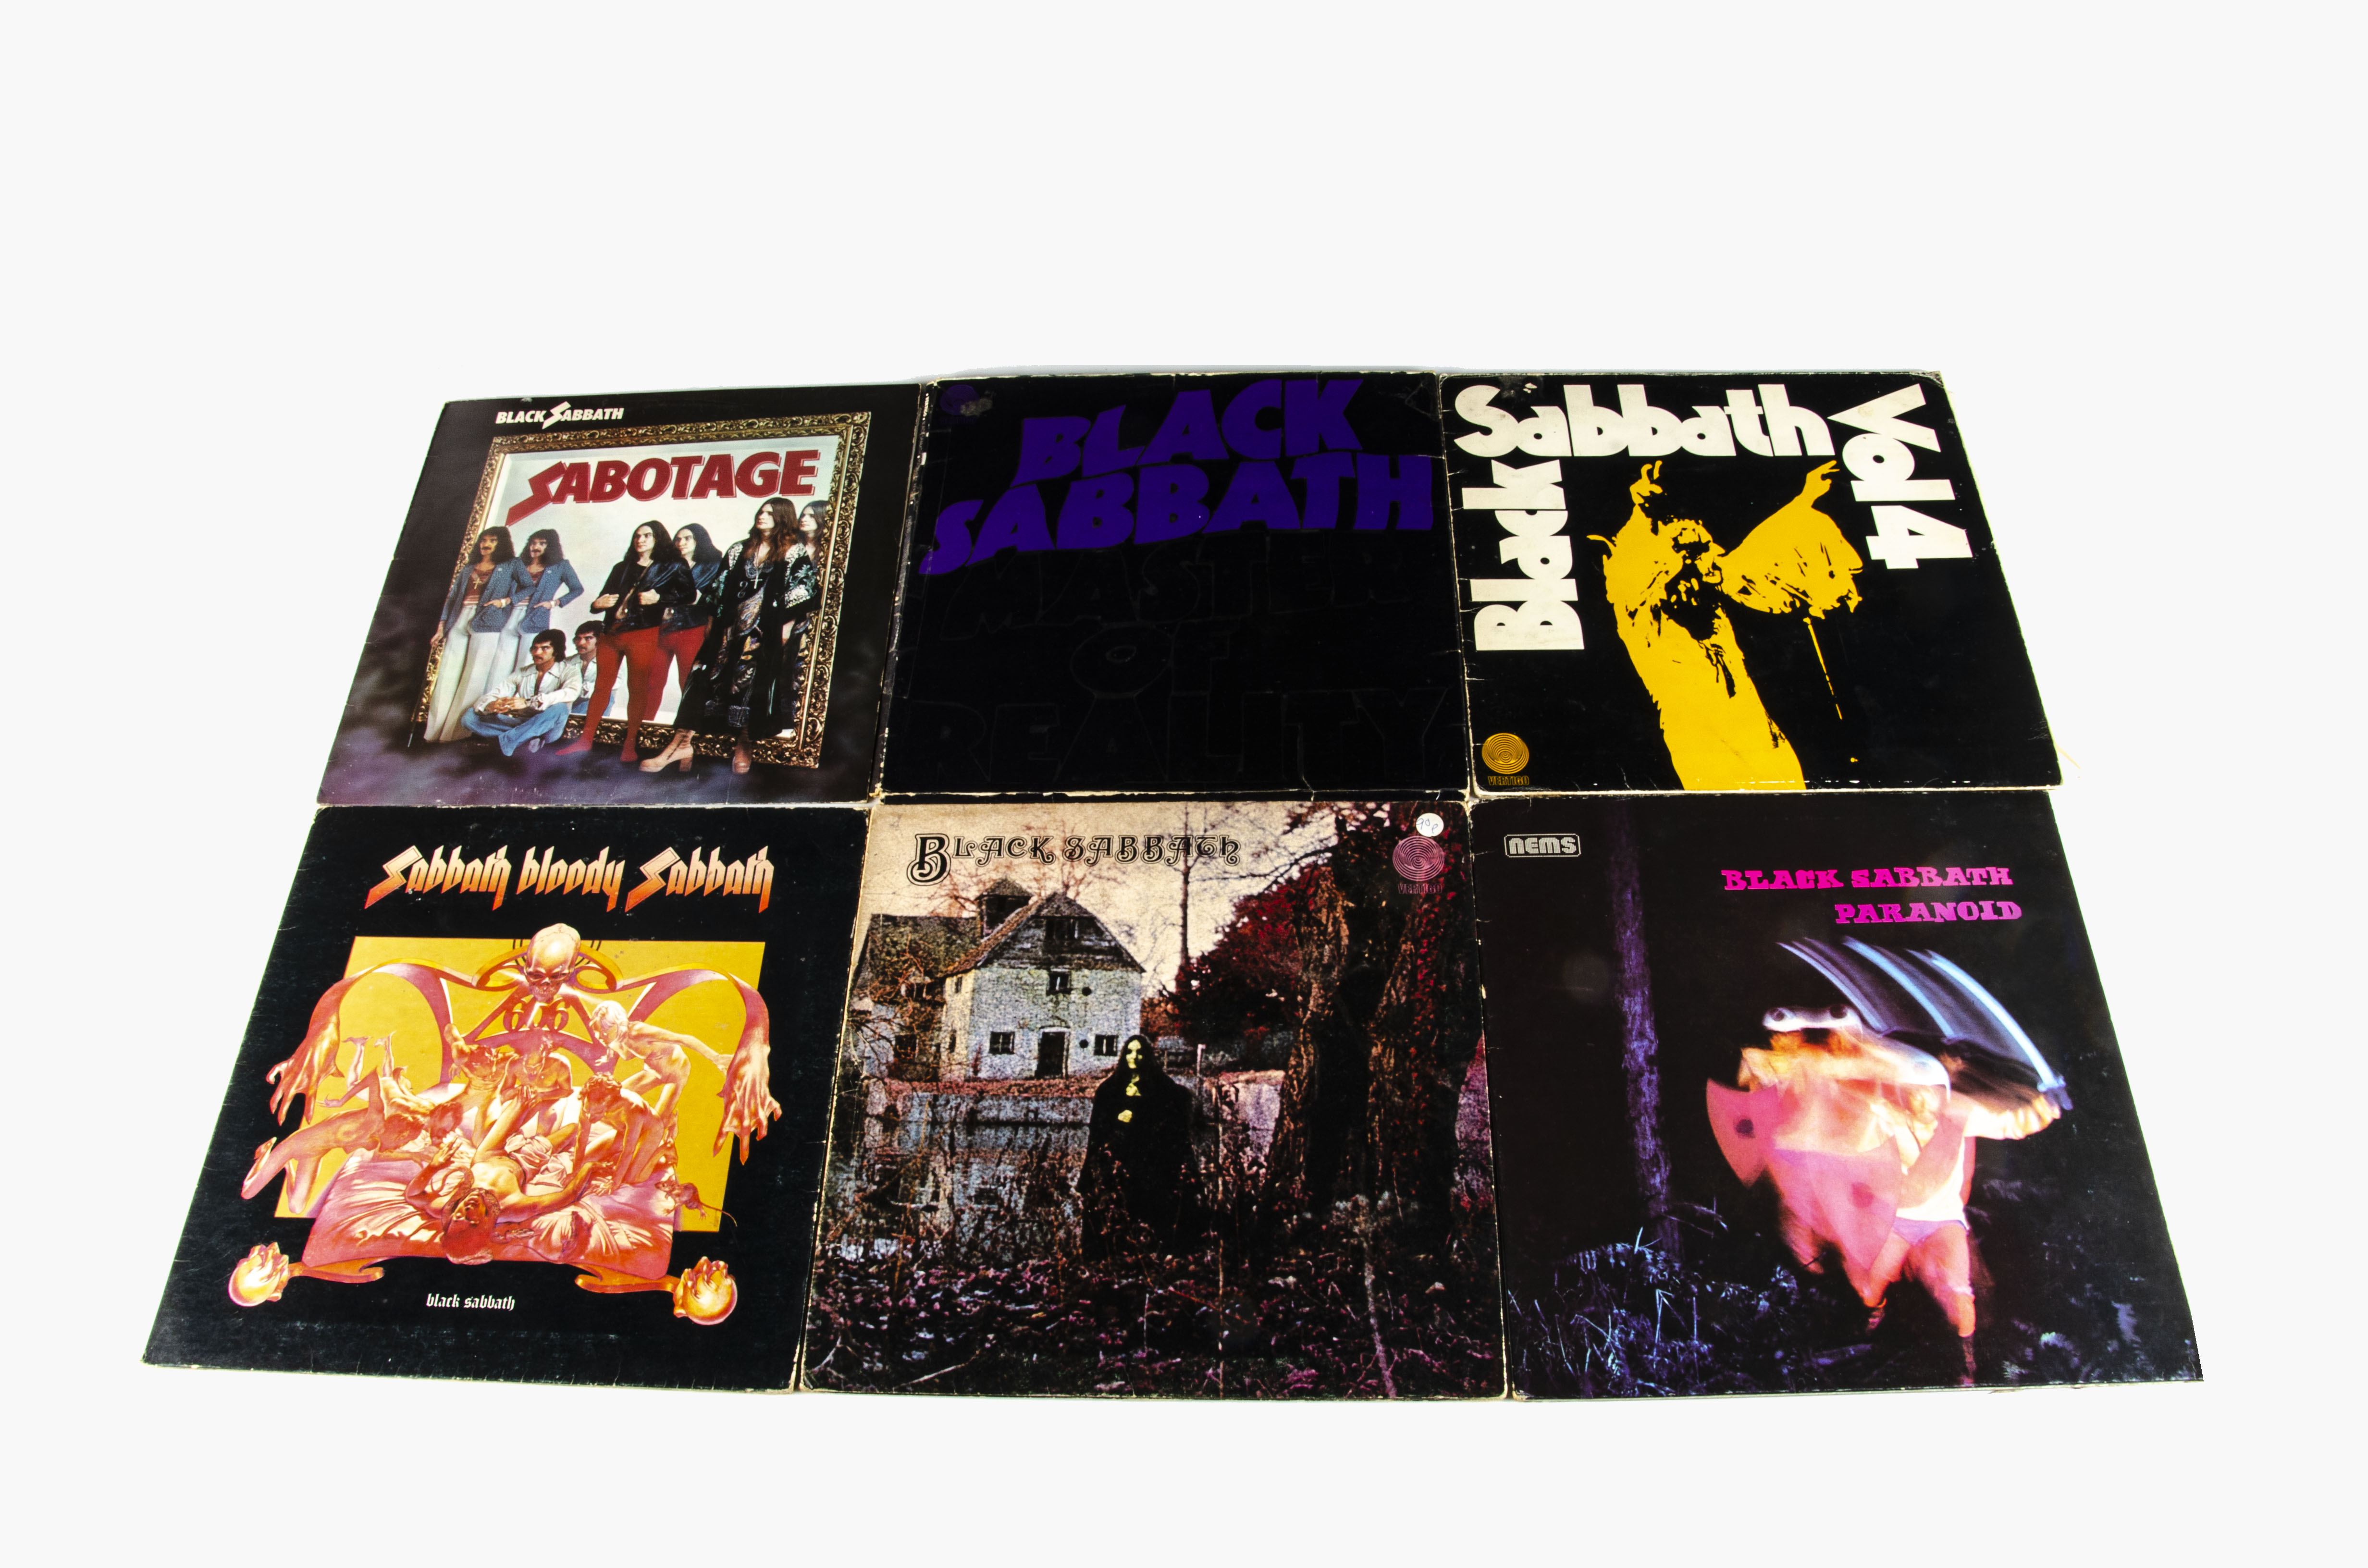 Black Sabbath LPs, fifteen albums comprising Black Sabbath (Vertigo - Spaceship labels), Master Of